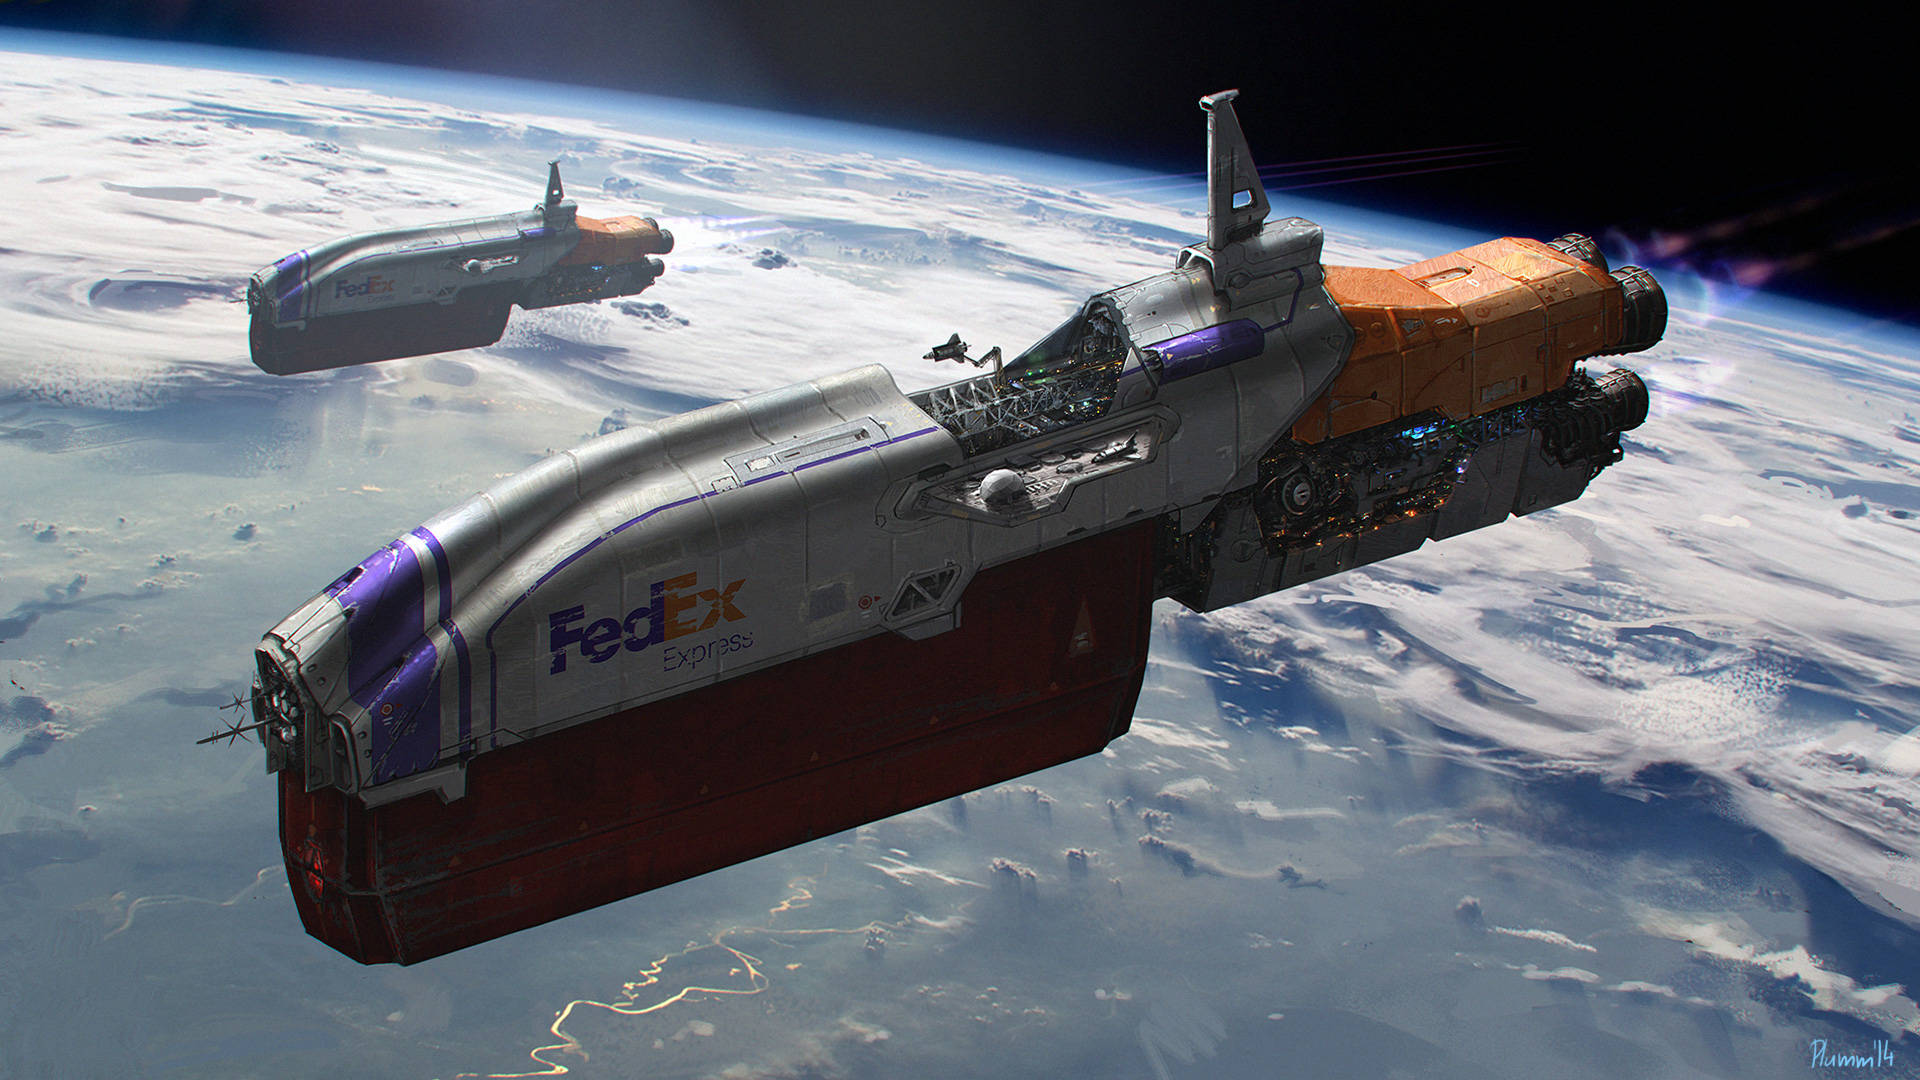 Fedex Spaceships Digital Art